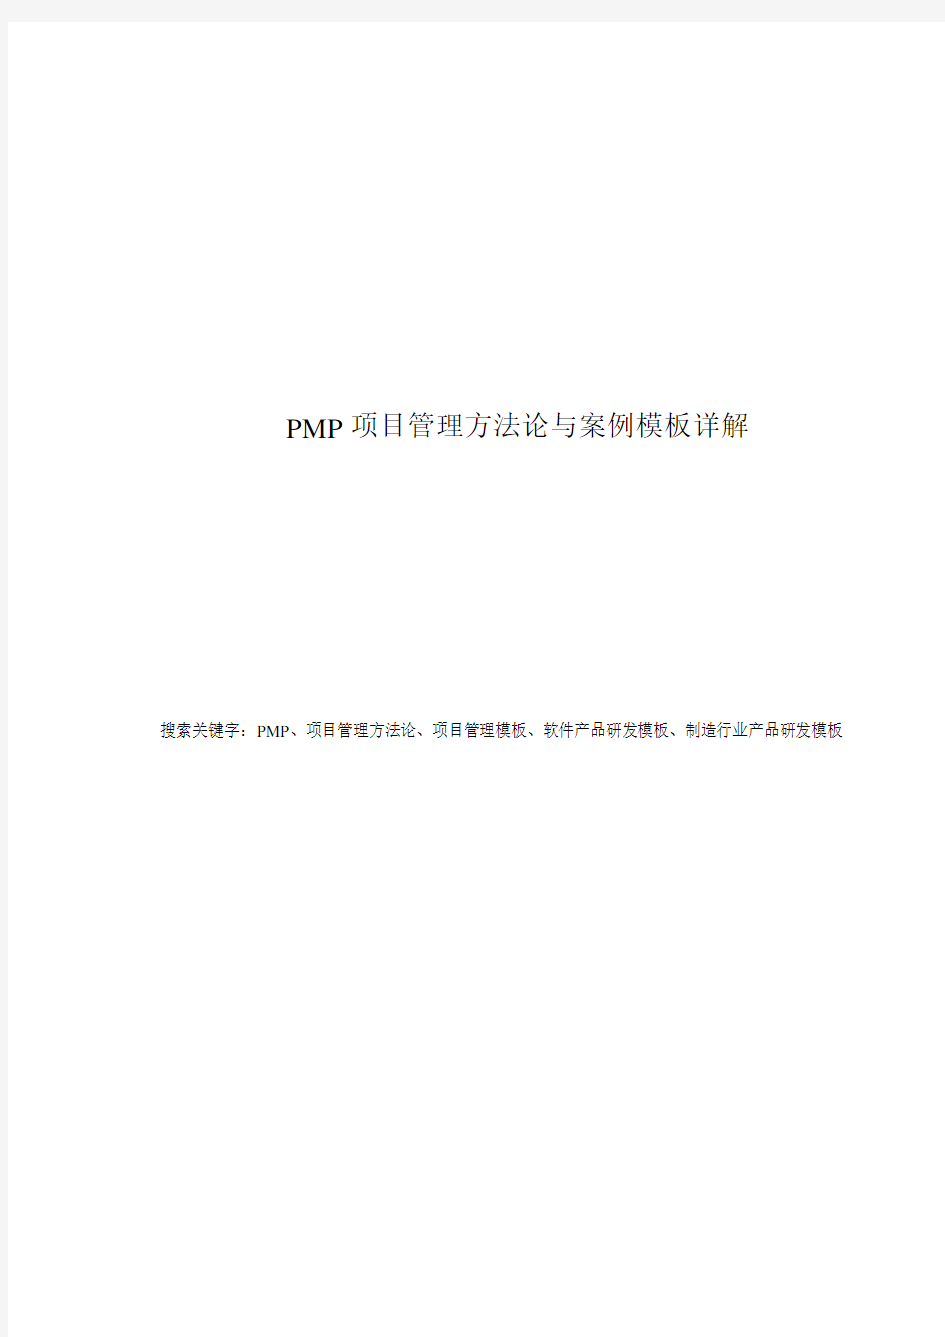 PMP 项目管理方法论与案例模板详解